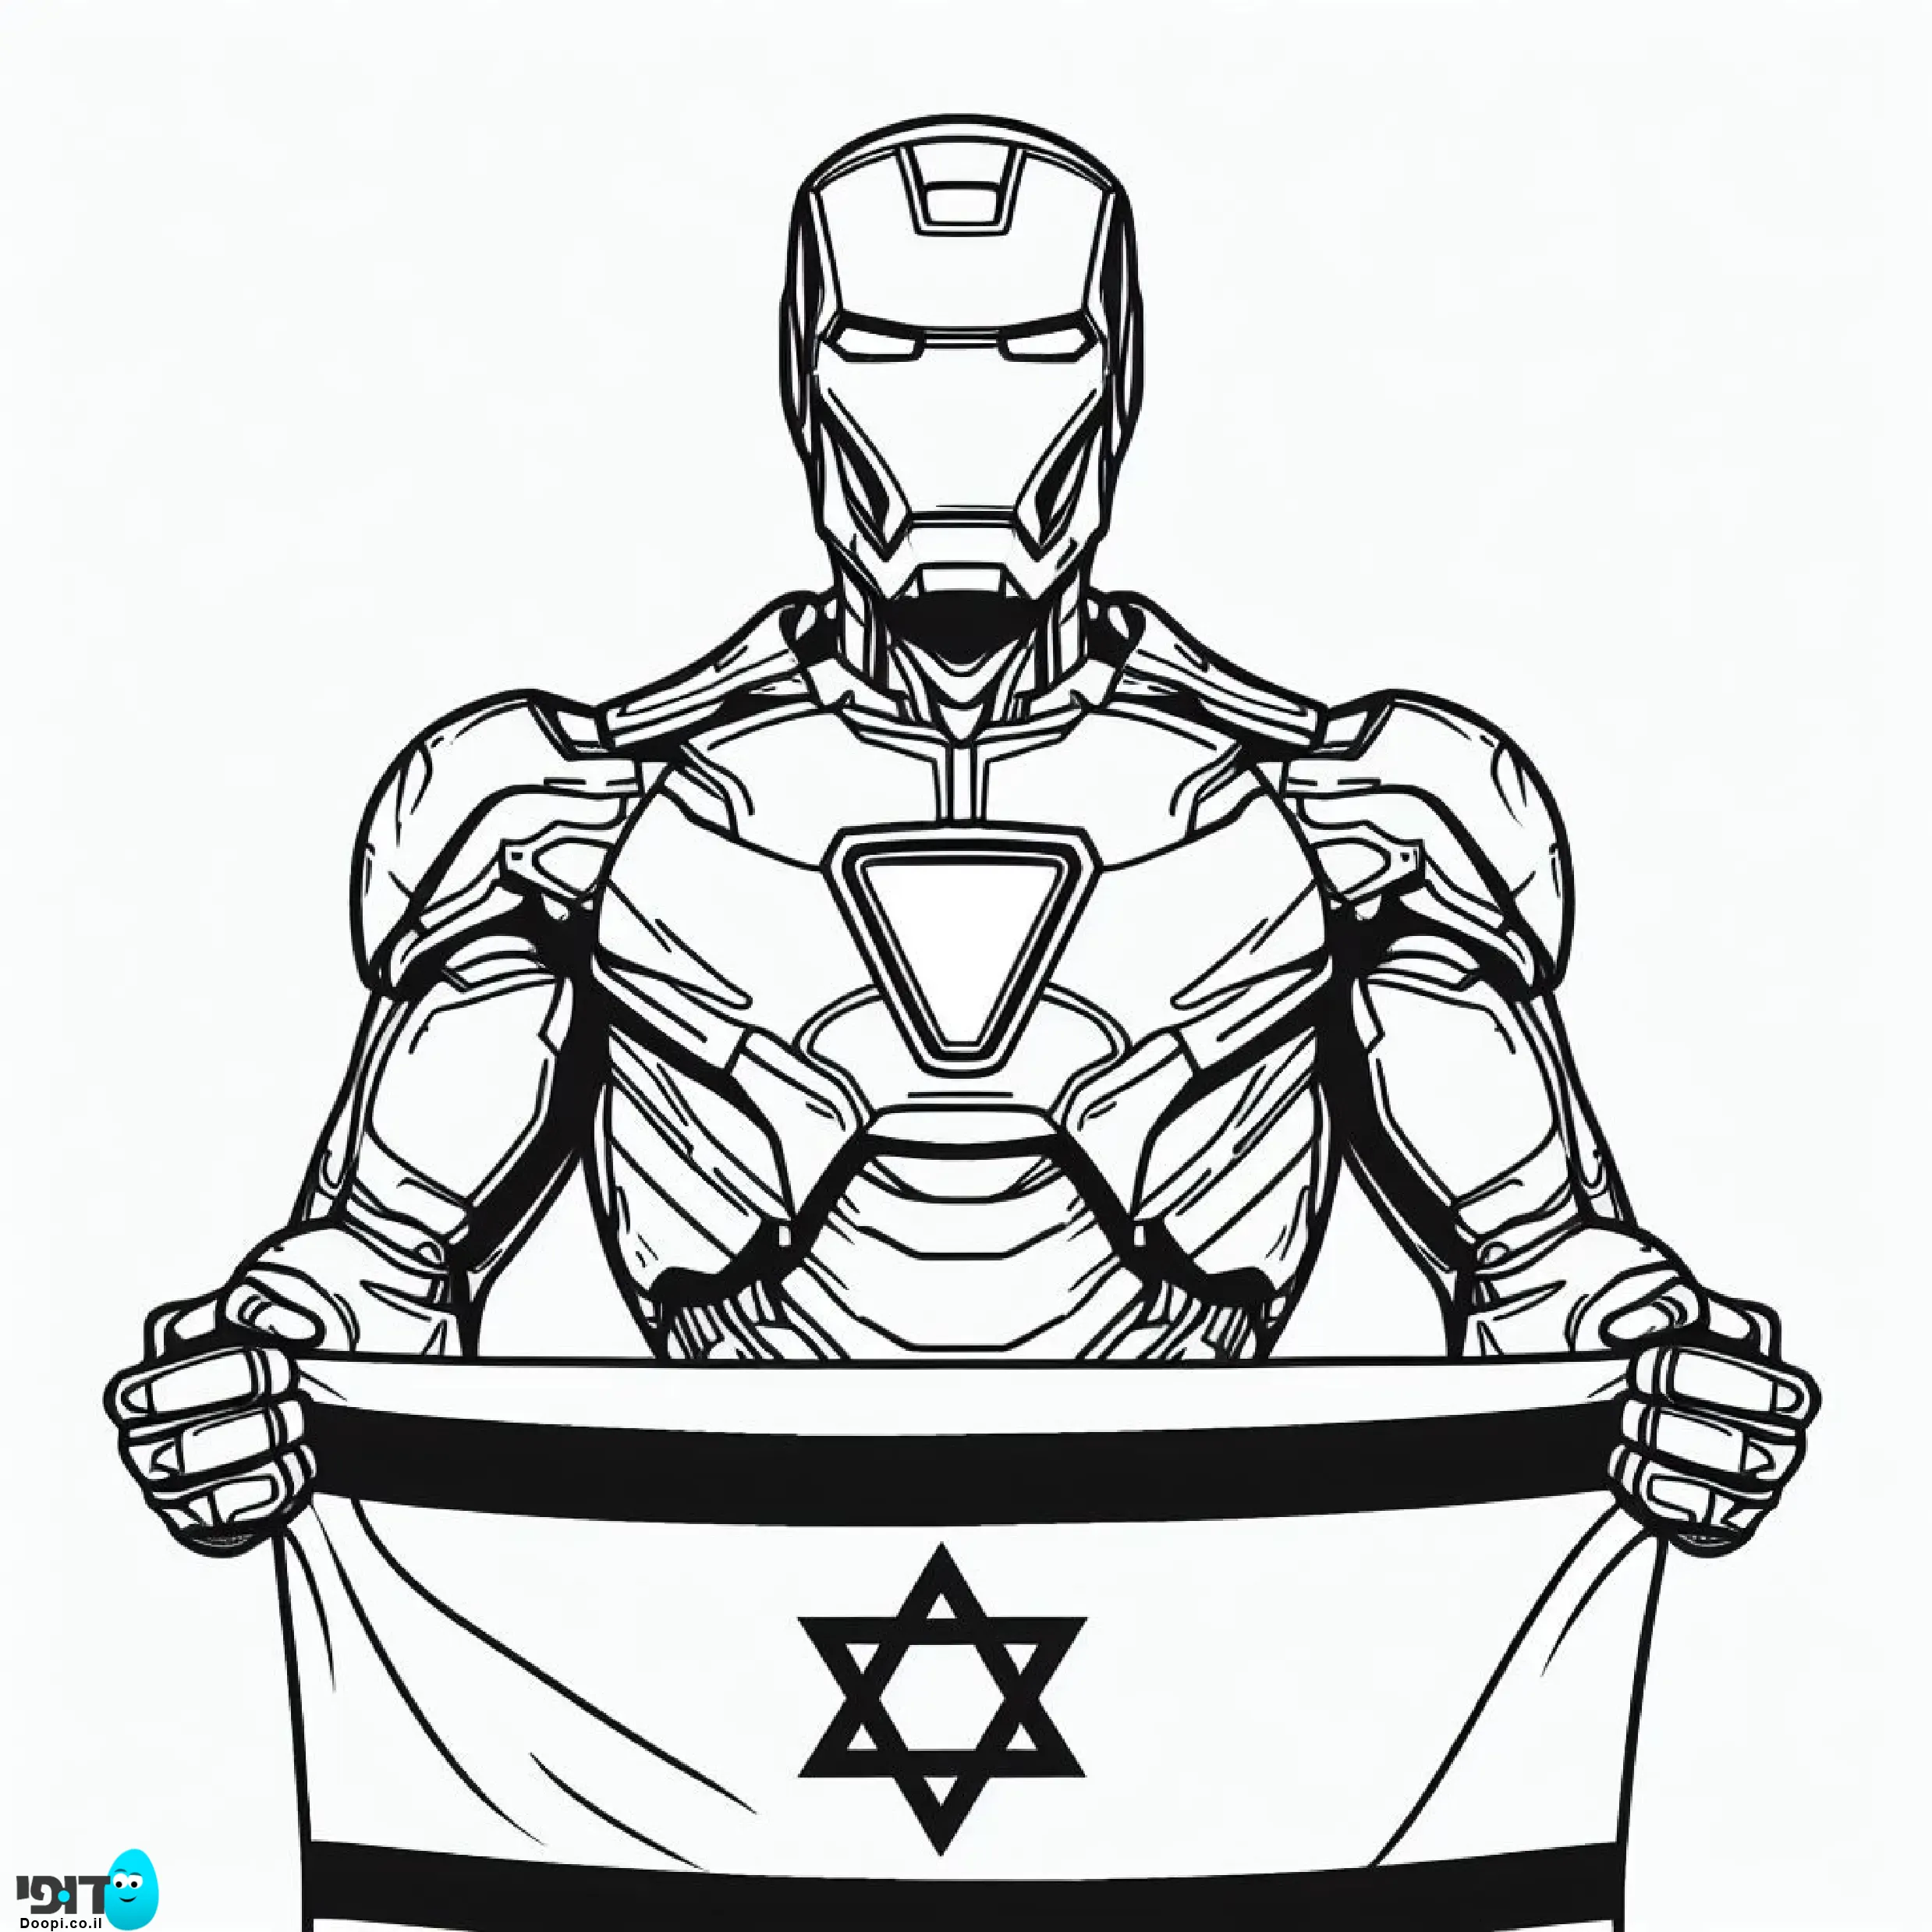 דף צביעה איירון מן עם דגל ישראל